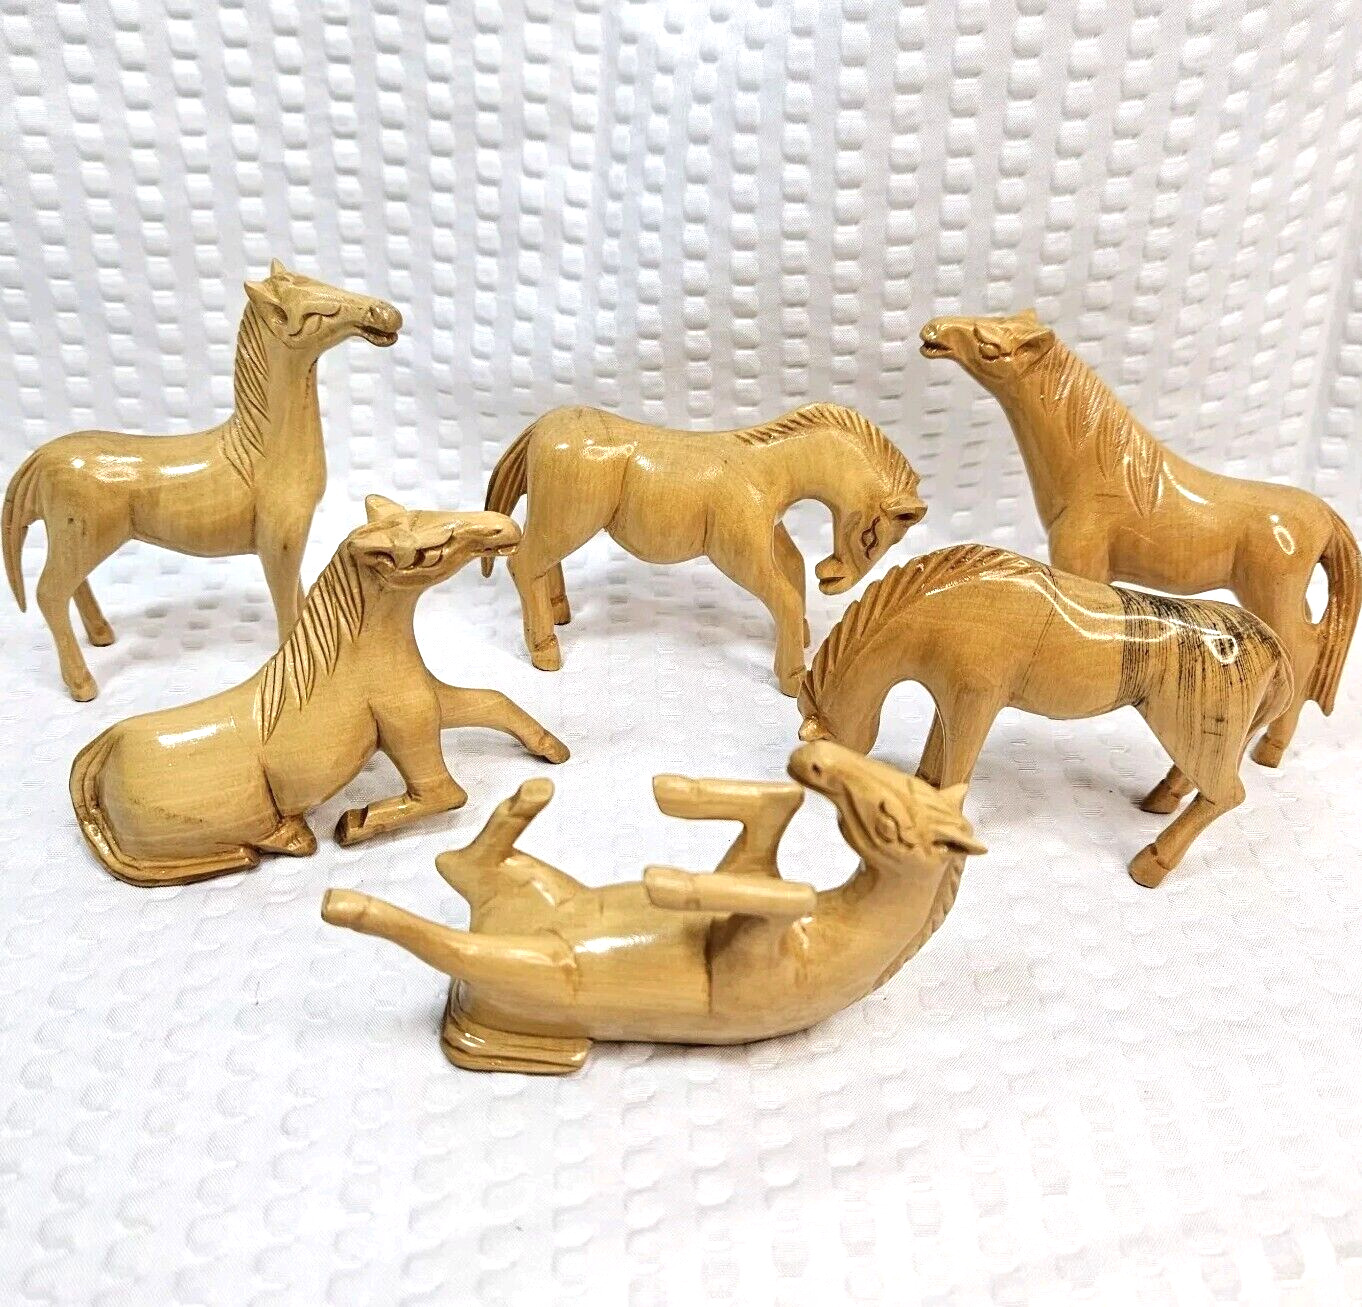 Vintage Carved Wood Horse Figurine Folk Art Set Of 6